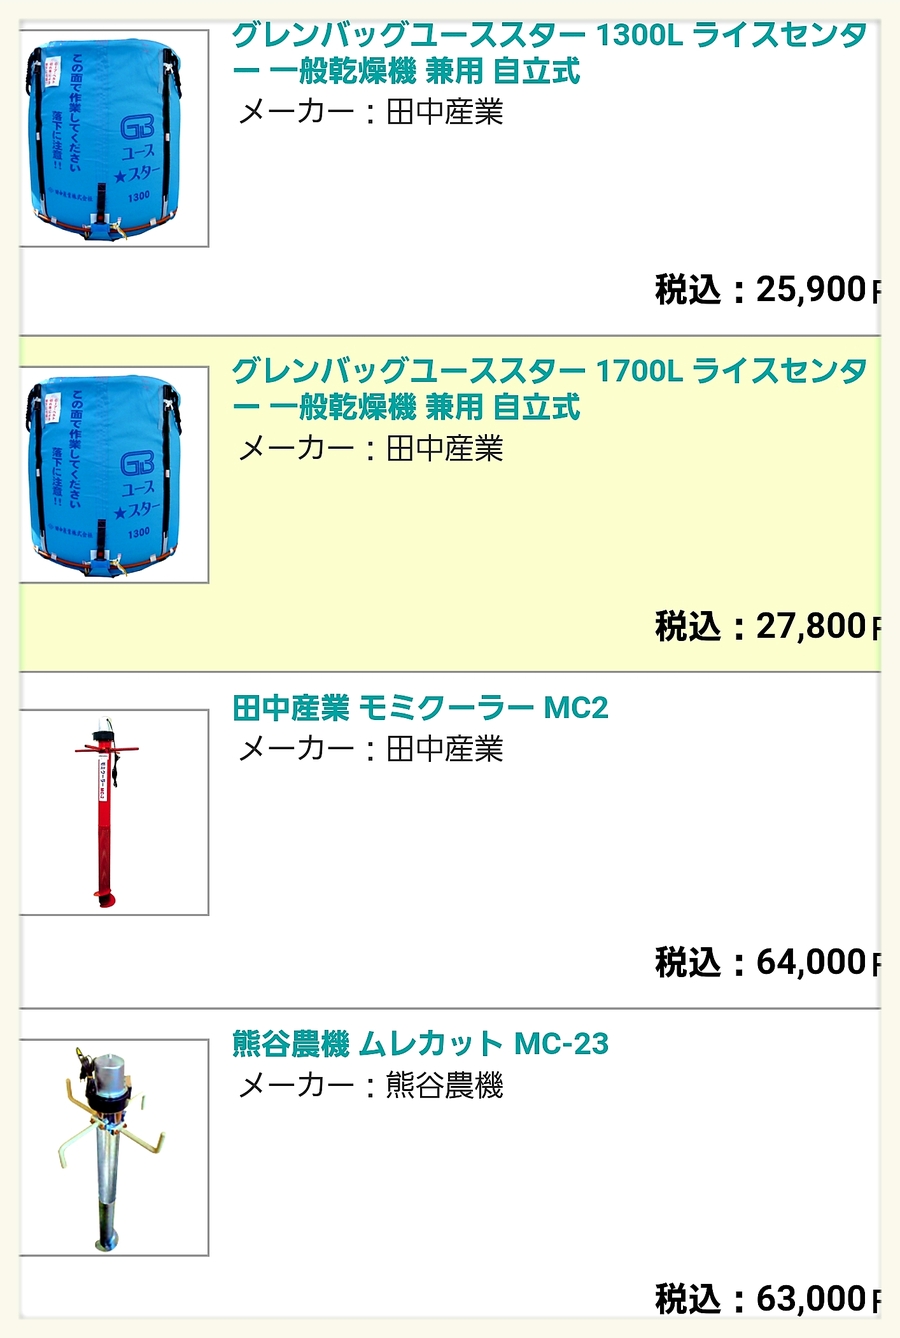 あなたにおすすめの商品 買援隊店田中産業 モミクーラー 籾のムレ防止 MC-2